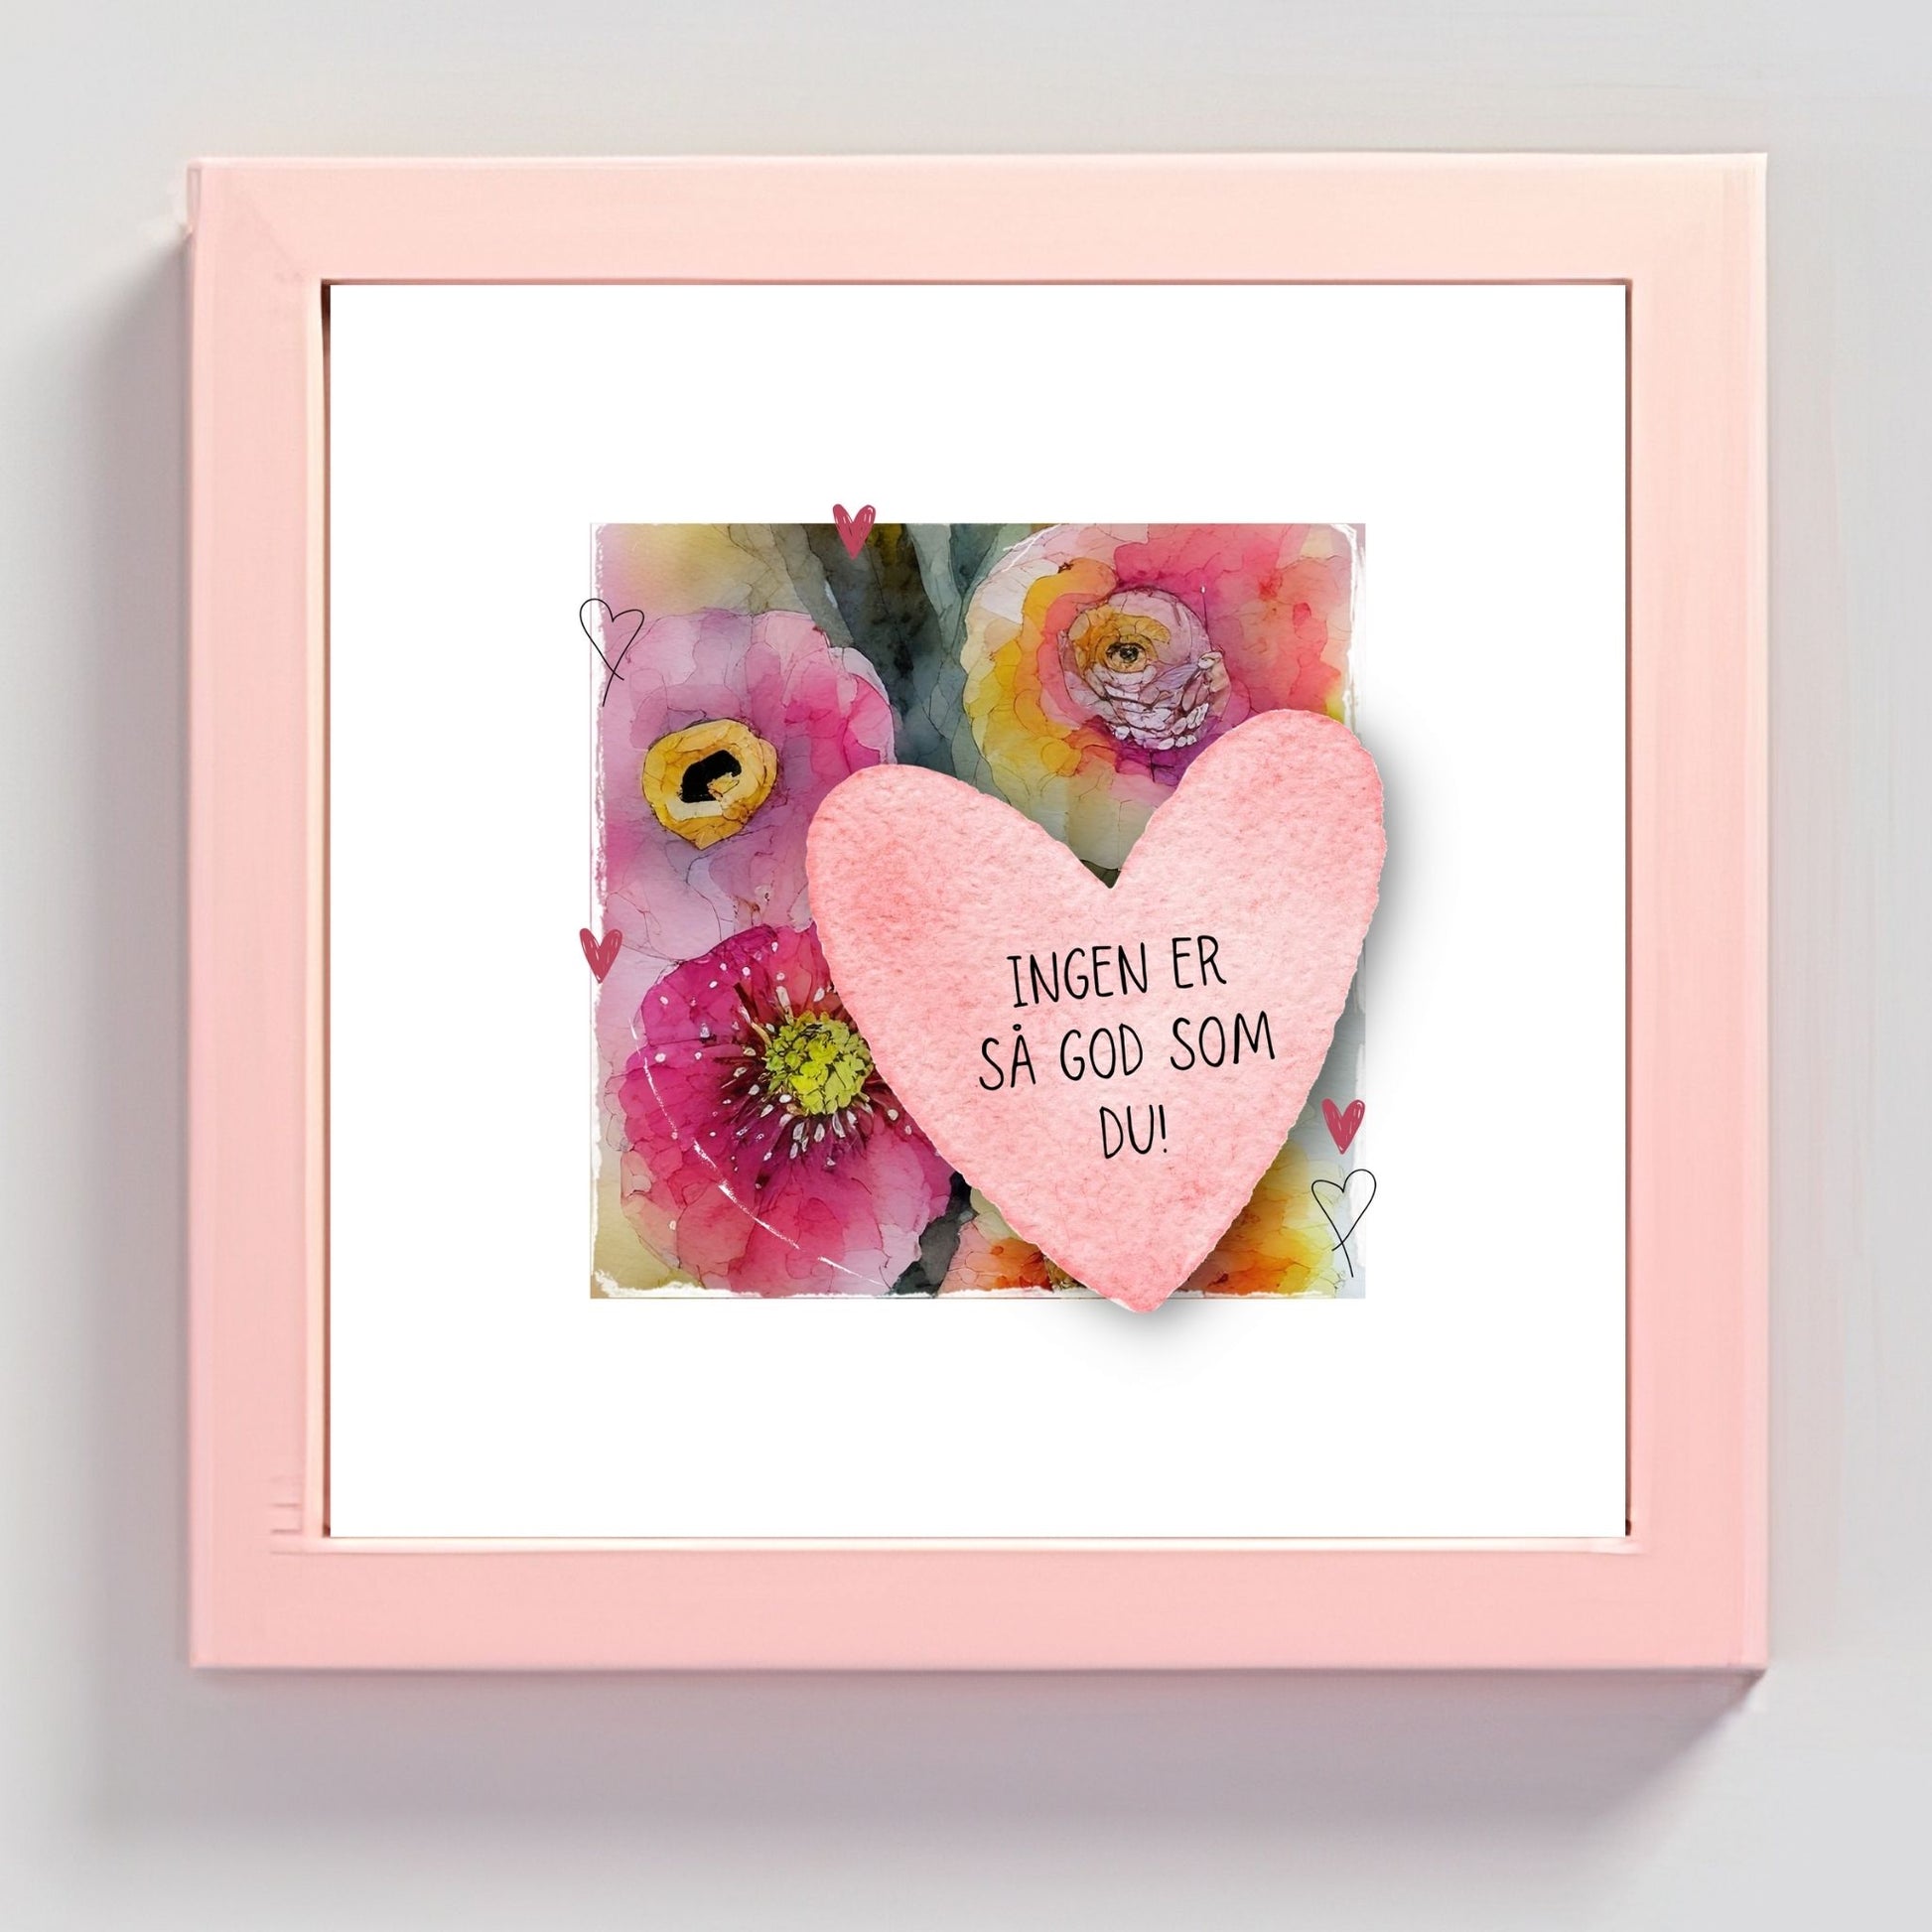 Grafisk plakat med et rosa hjerte påført tekst "Ingen er så god som du!". Bagrunn i cerise og guloransje blomster. Illustrasjon viser plakat i rosa ramme.